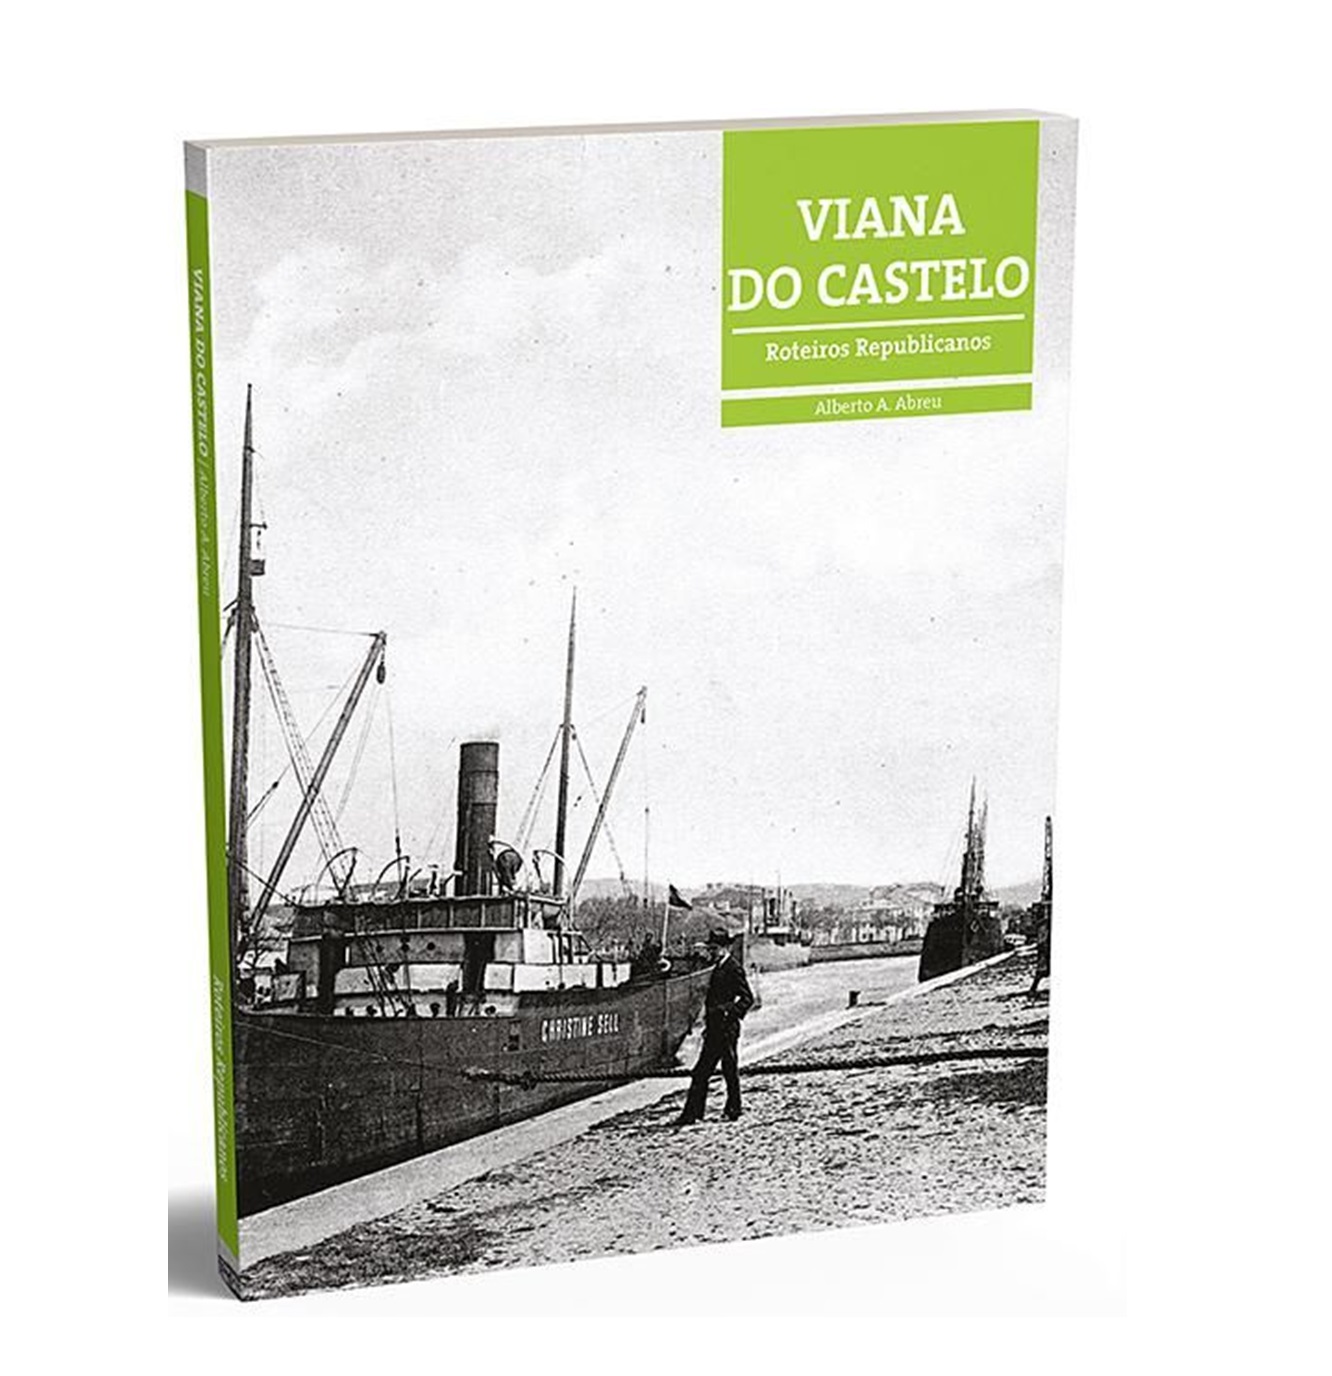 Roteiros Republicanos - Viana do Castelo.